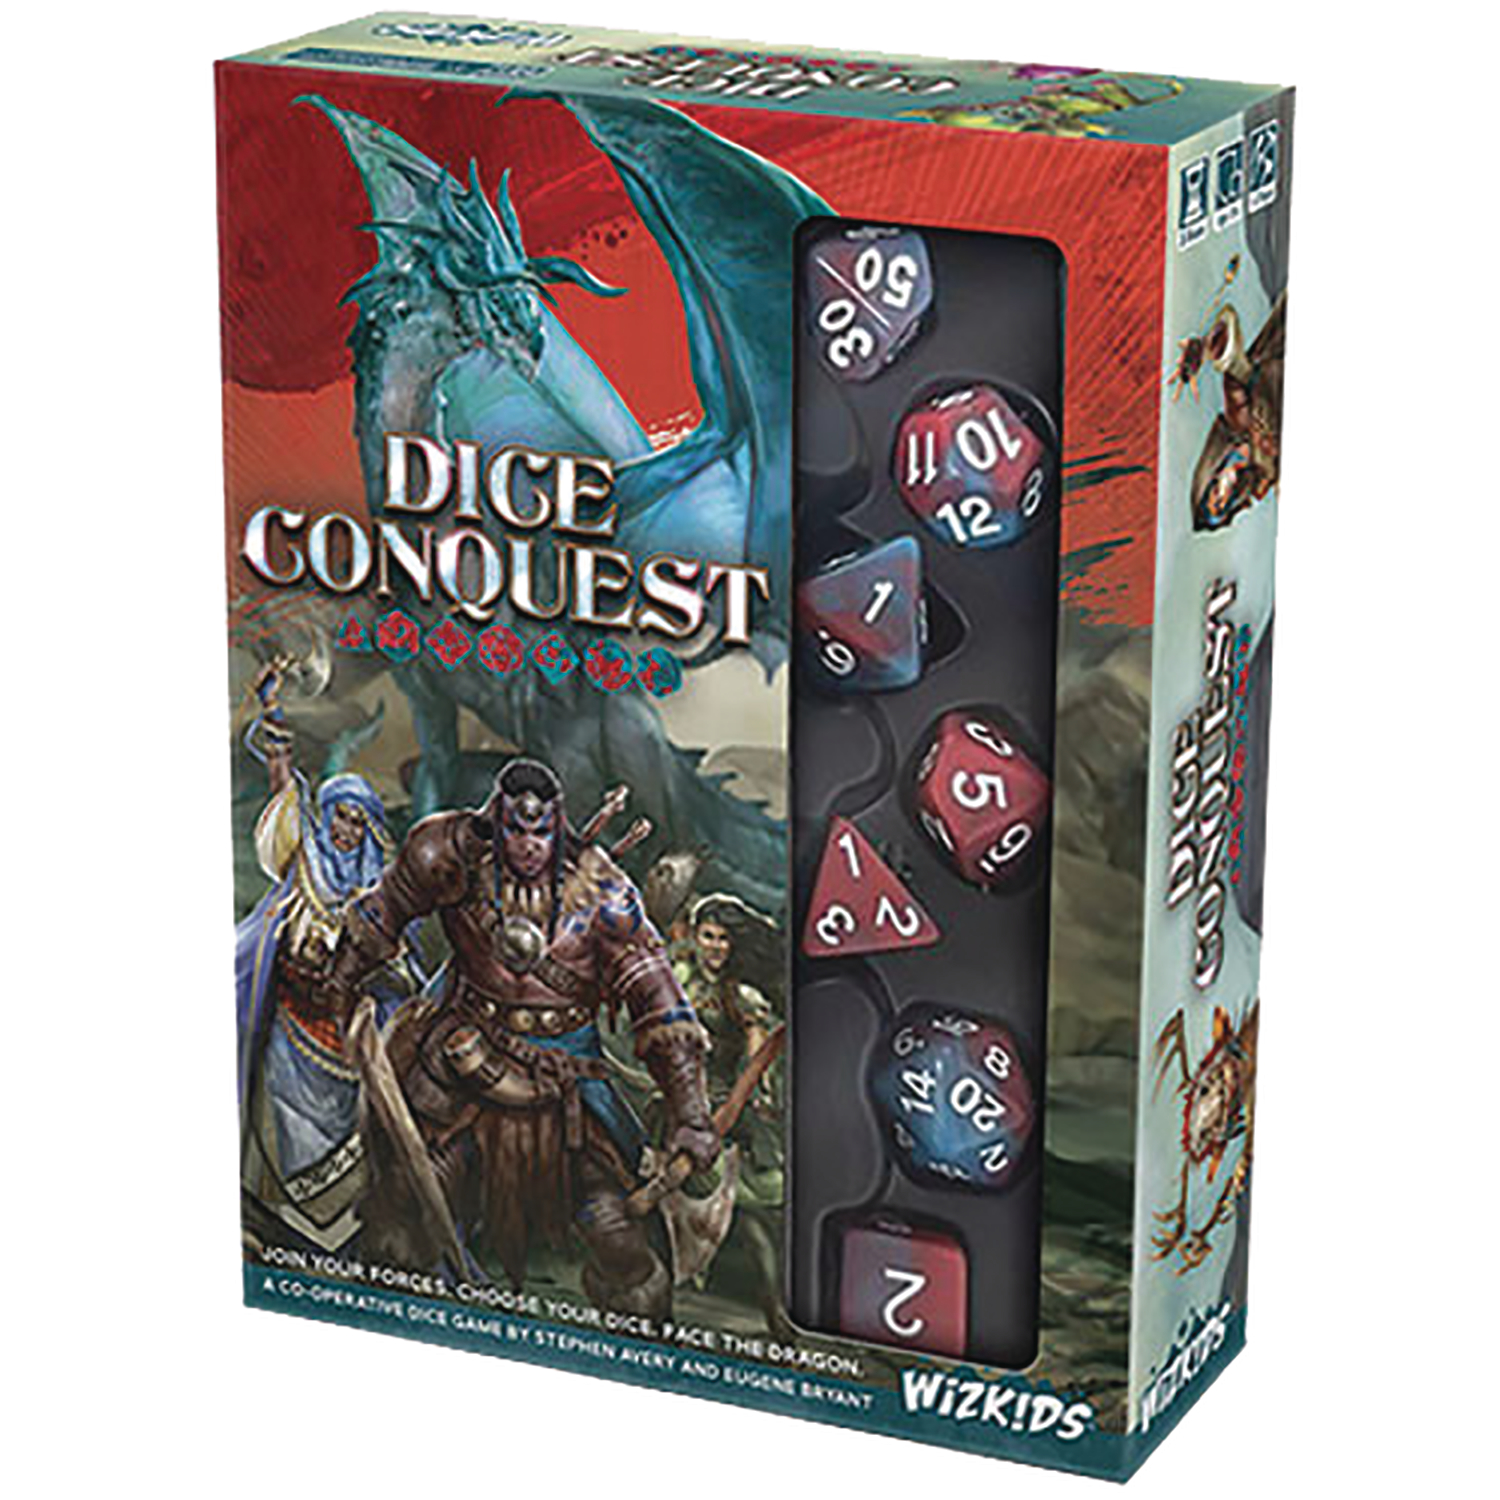 Dice Conquest Game